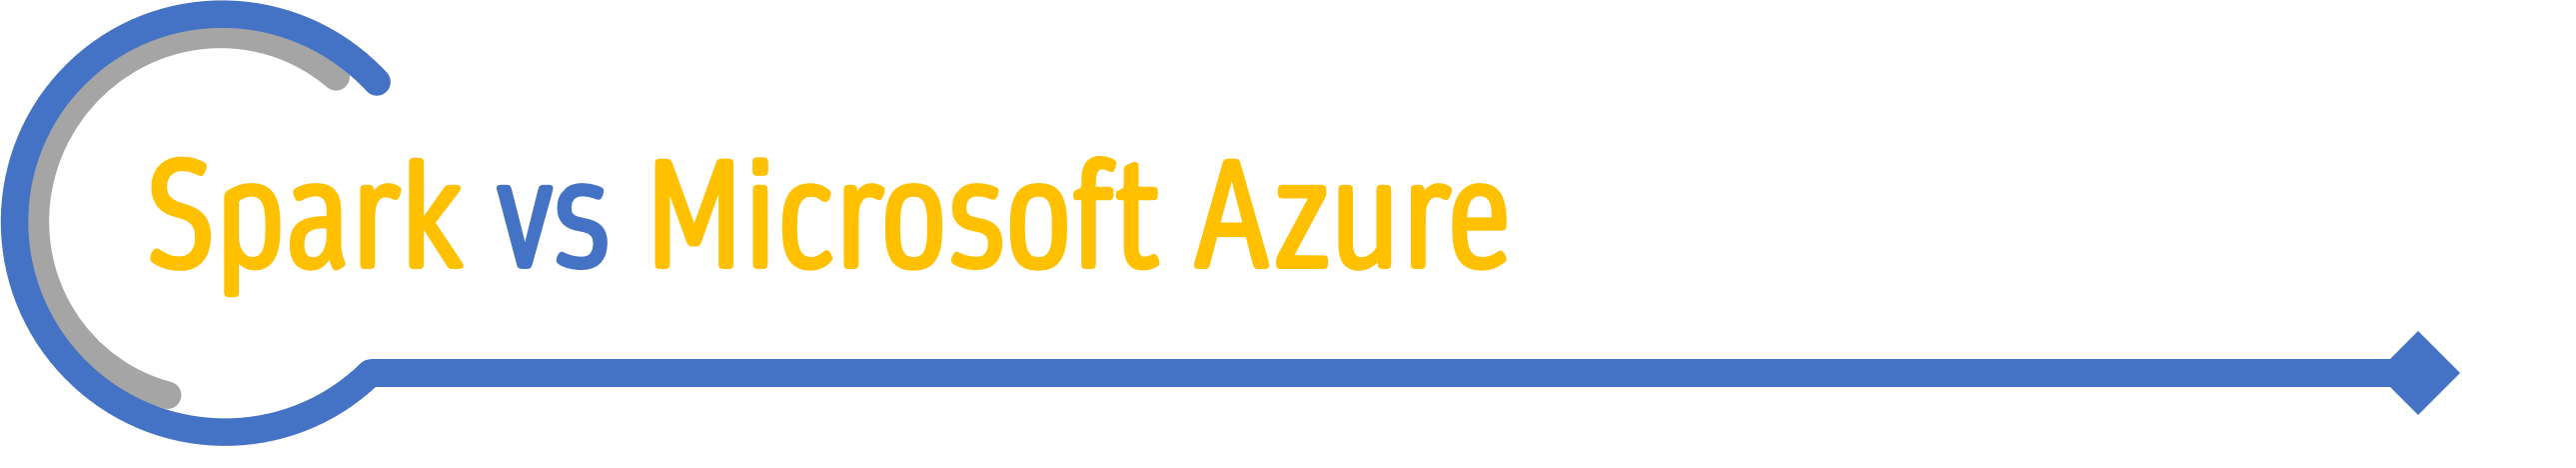 Spark vs Microsoft Azure